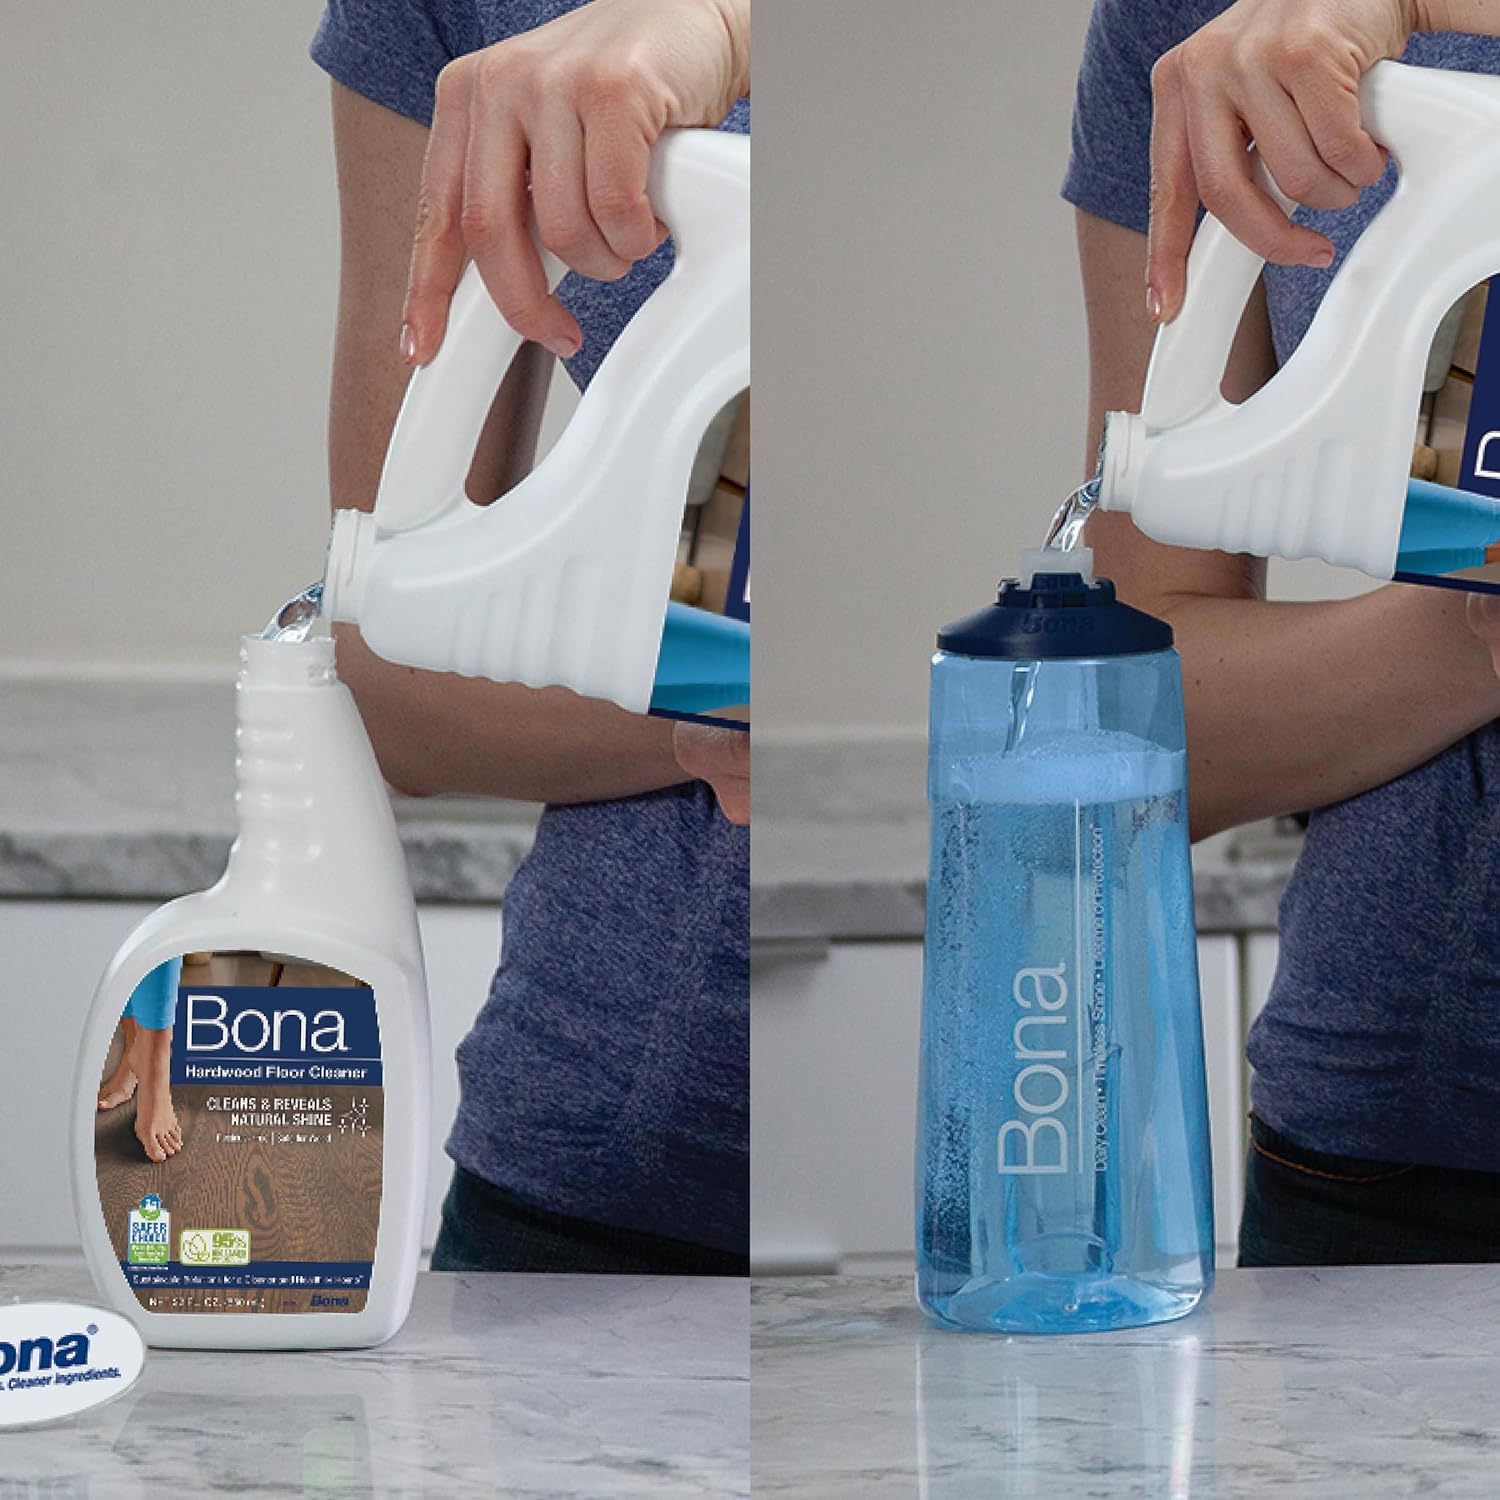 Bona Hardwood Floor Cleaner Refill - 64 fl oz - Unscented - Refill for Bona Spray Mops and Spray Bottles - Residue-Free Floor Cleaning Solution for Hardwood Floors : Health & Household